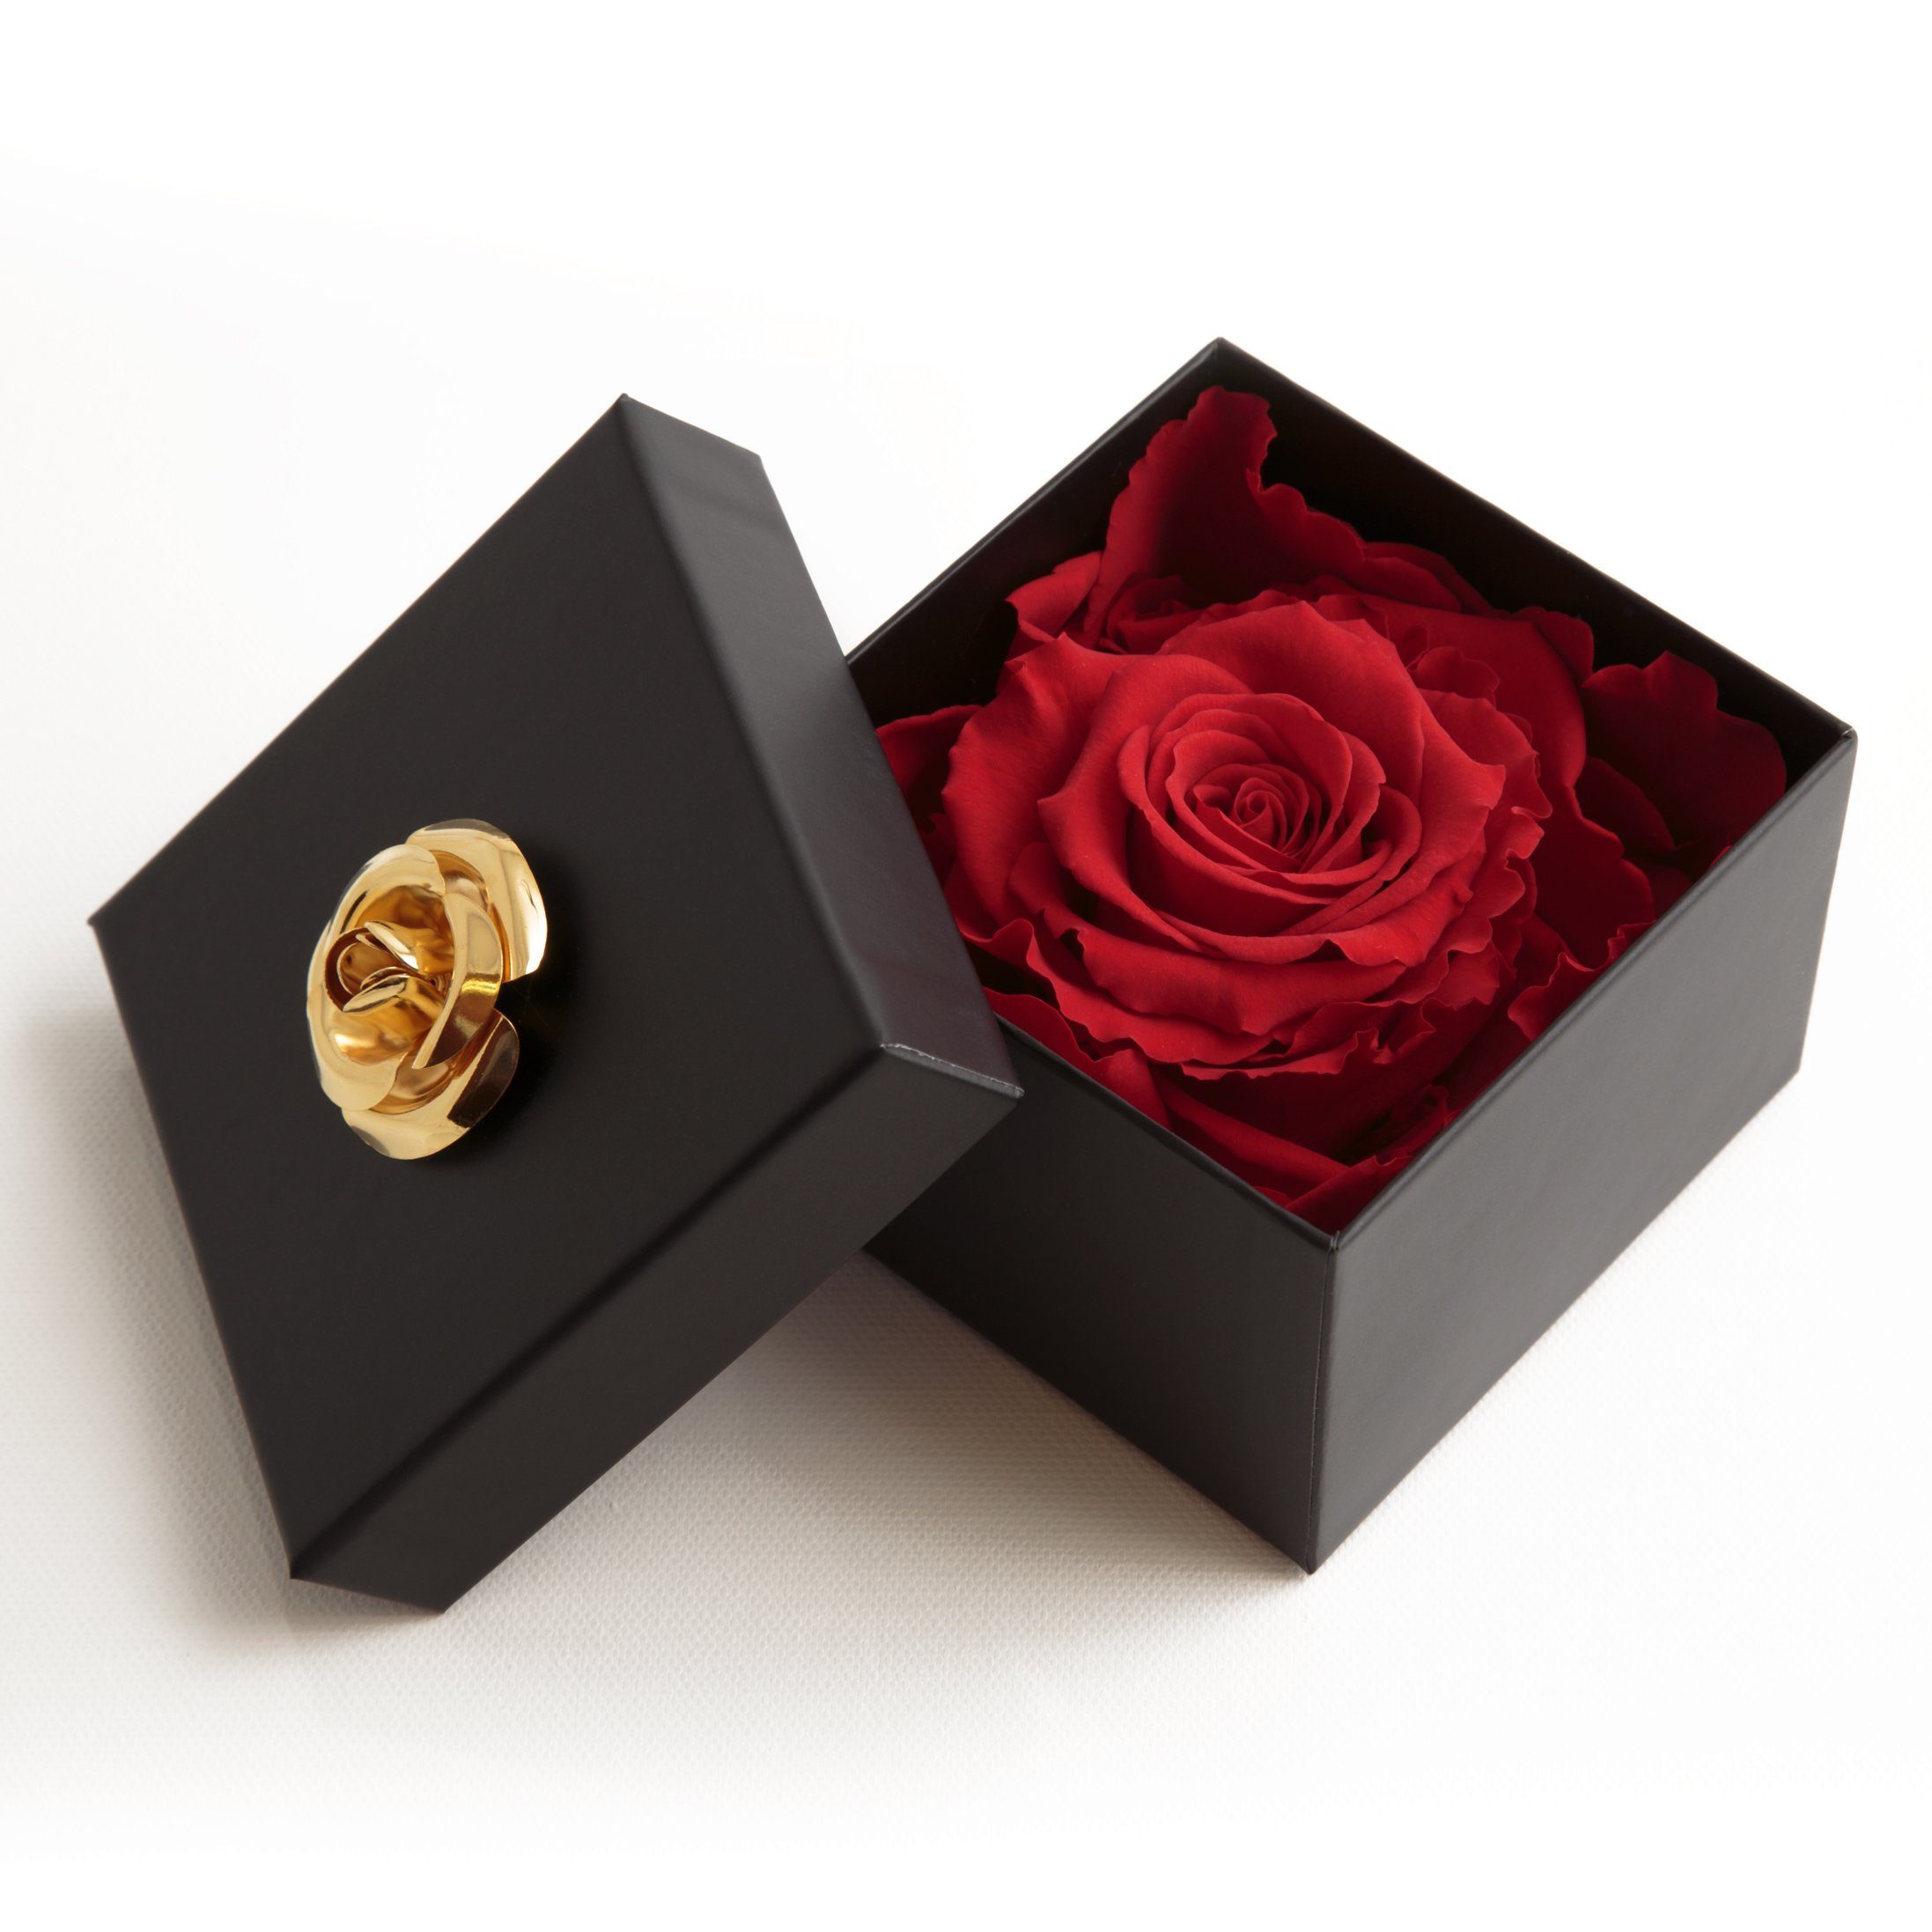 Kunstblume 1 Infinity Rose haltbar 3 Jahre Rose in Box mit Blumendeckel Rose, ROSEMARIE SCHULZ Heidelberg, Höhe 6.5 cm, Echte Rose haltbar bis zu 3 Jahre rot